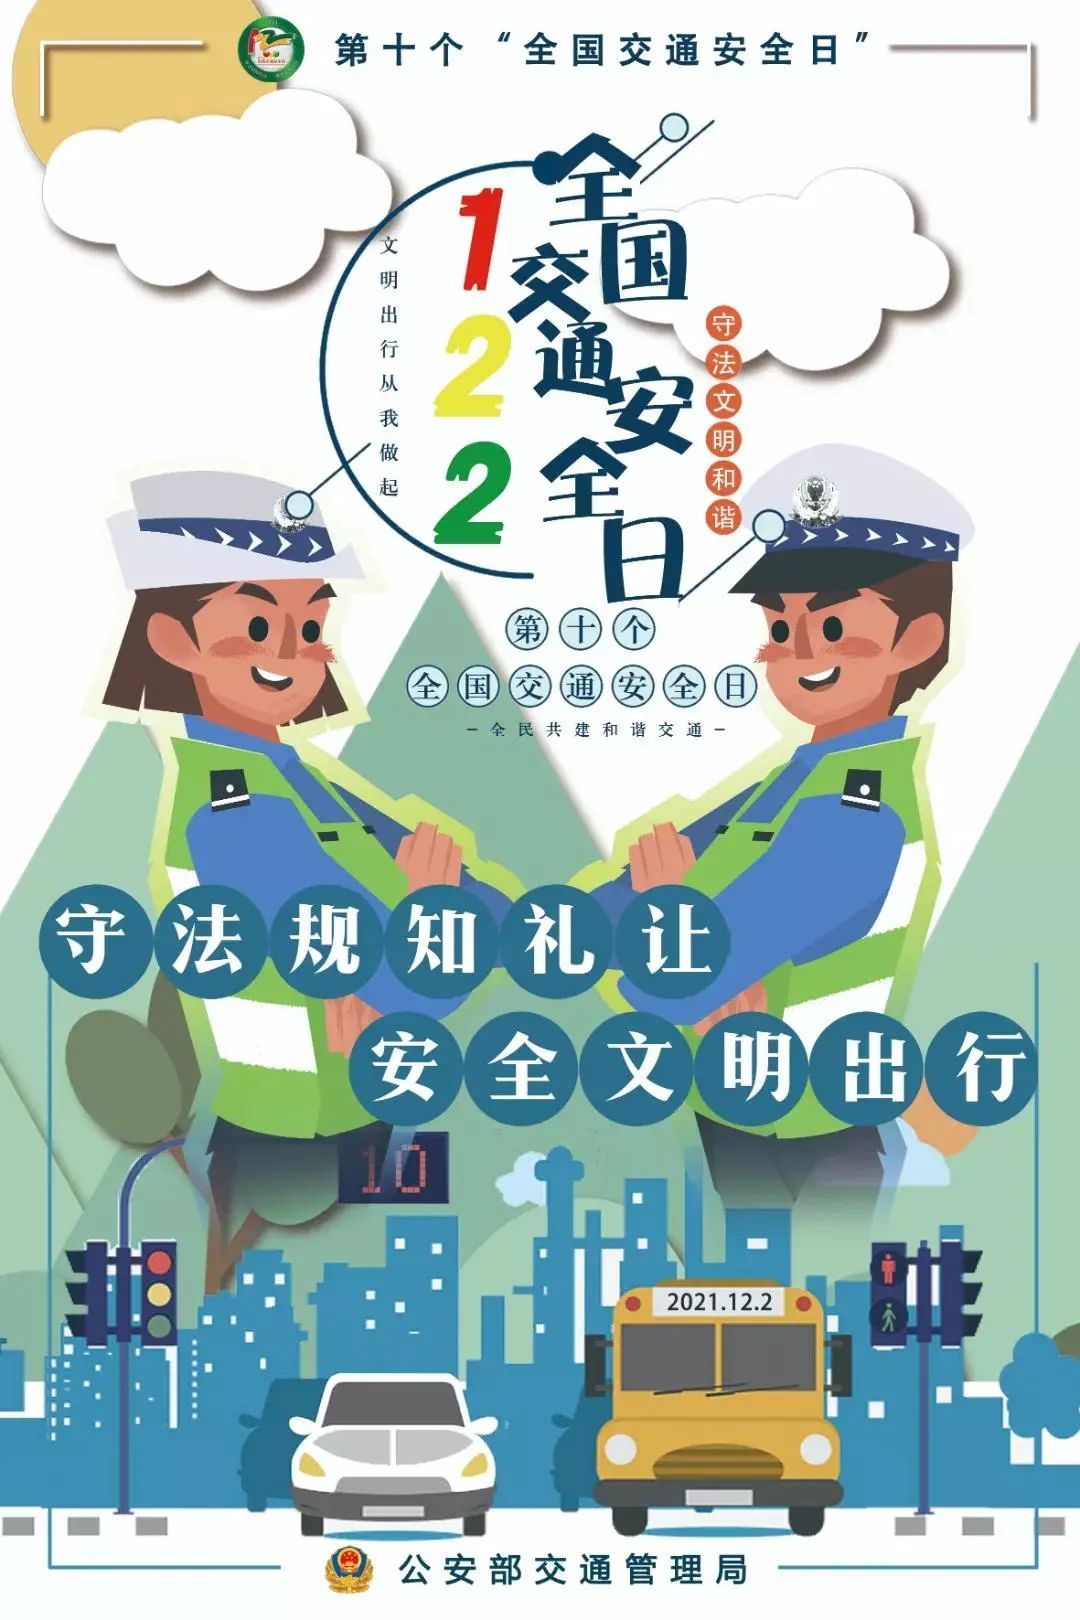 宝山警方多点位开展交通安全宣传,增强全民安全意识